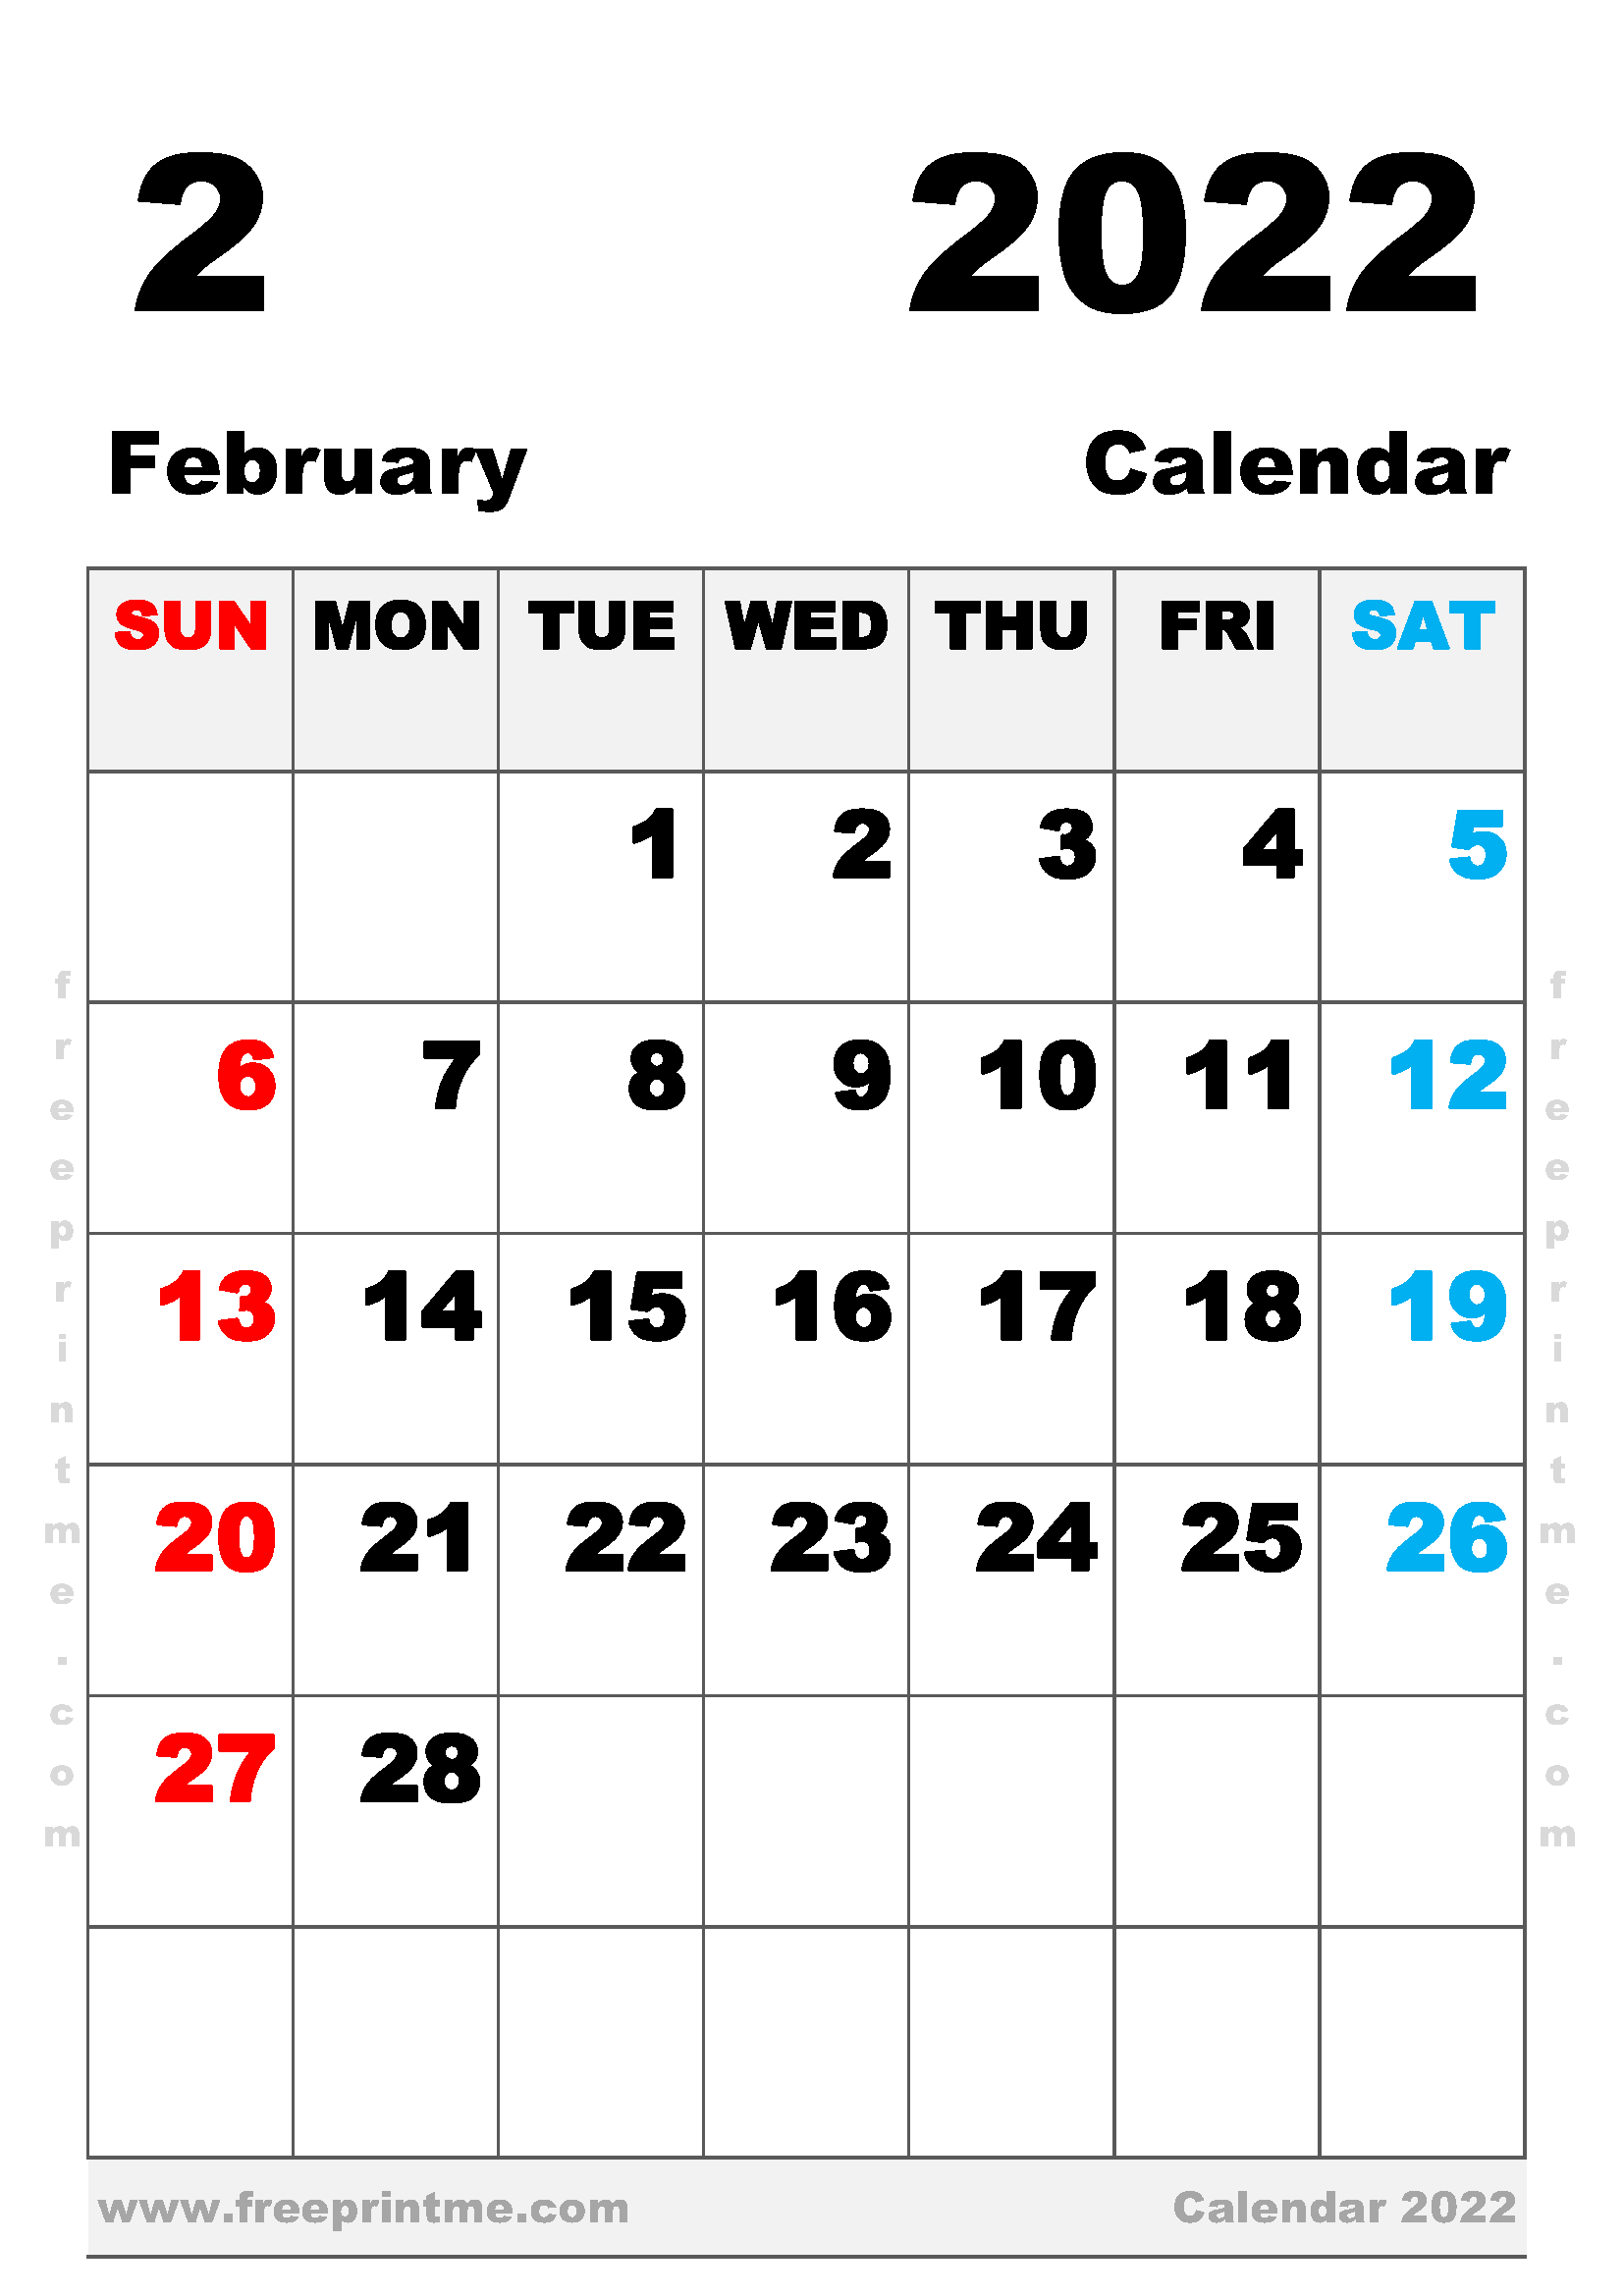 February Calendar 2022 Free Printable February 2022 Calendar A4